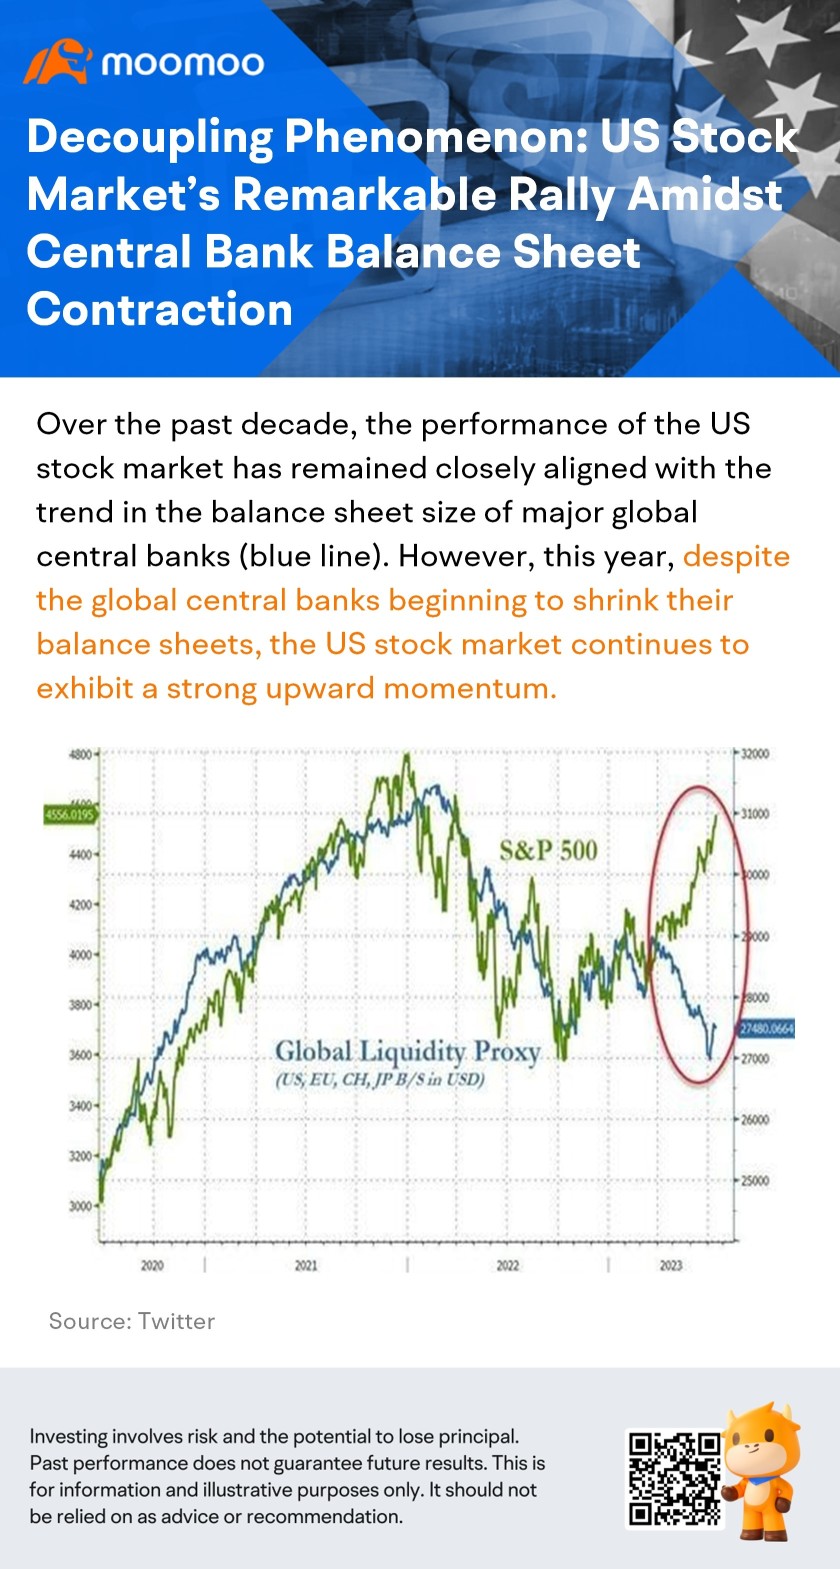 切り離し現象：中央銀行のバランスシート縮小の中での米国株式市場の注目すべき上昇